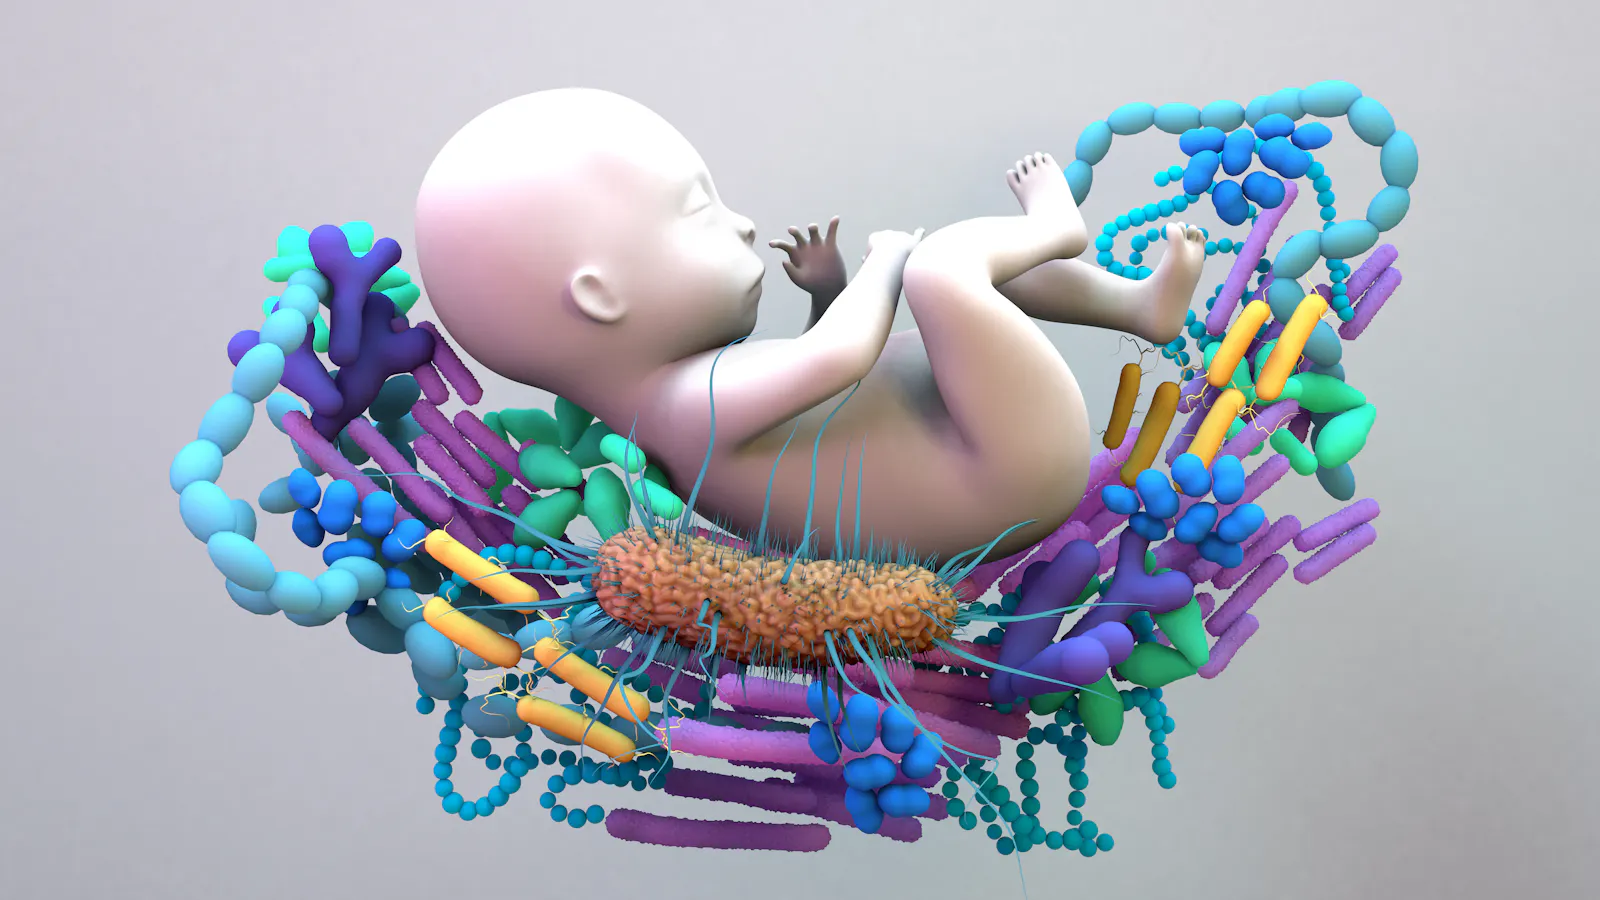 Wir erwerben unser erstes Mikrobiom schon als Baby. (Quelle Shutterstock)